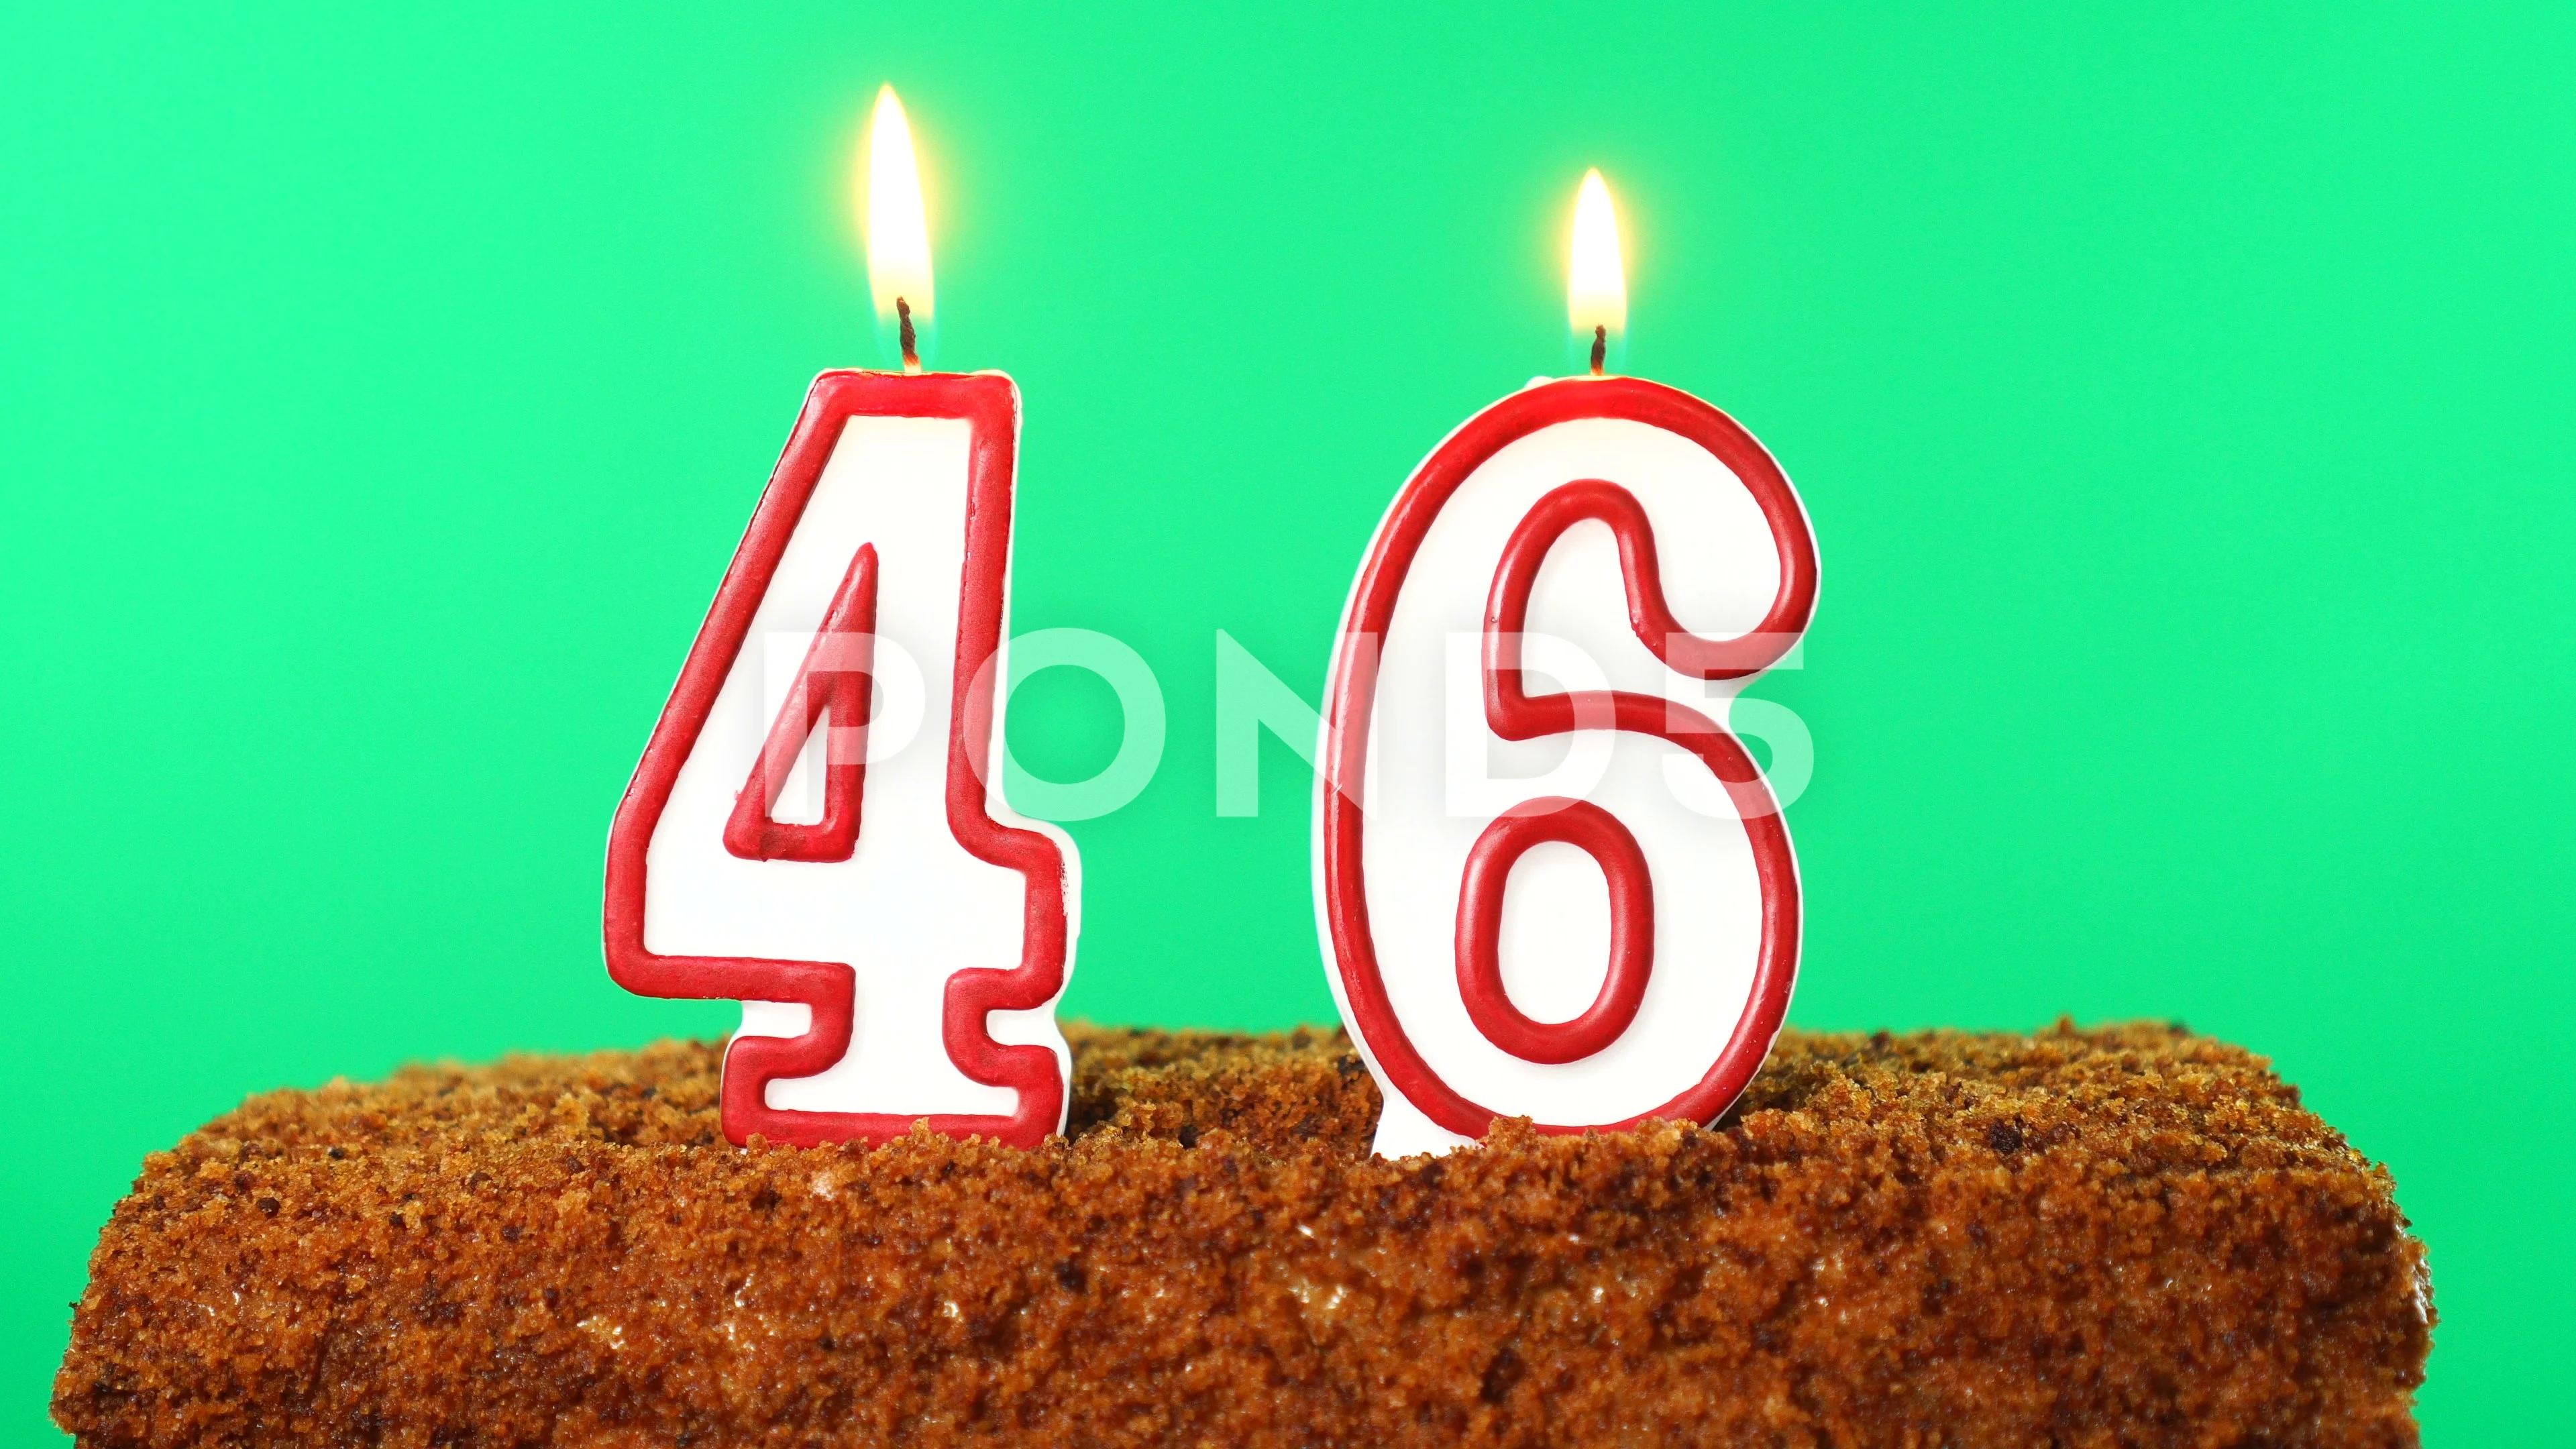 Buy 46 46th Birthday Cake Topper Svg 46 46th Happy Birthday Cake Online in  India  Etsy